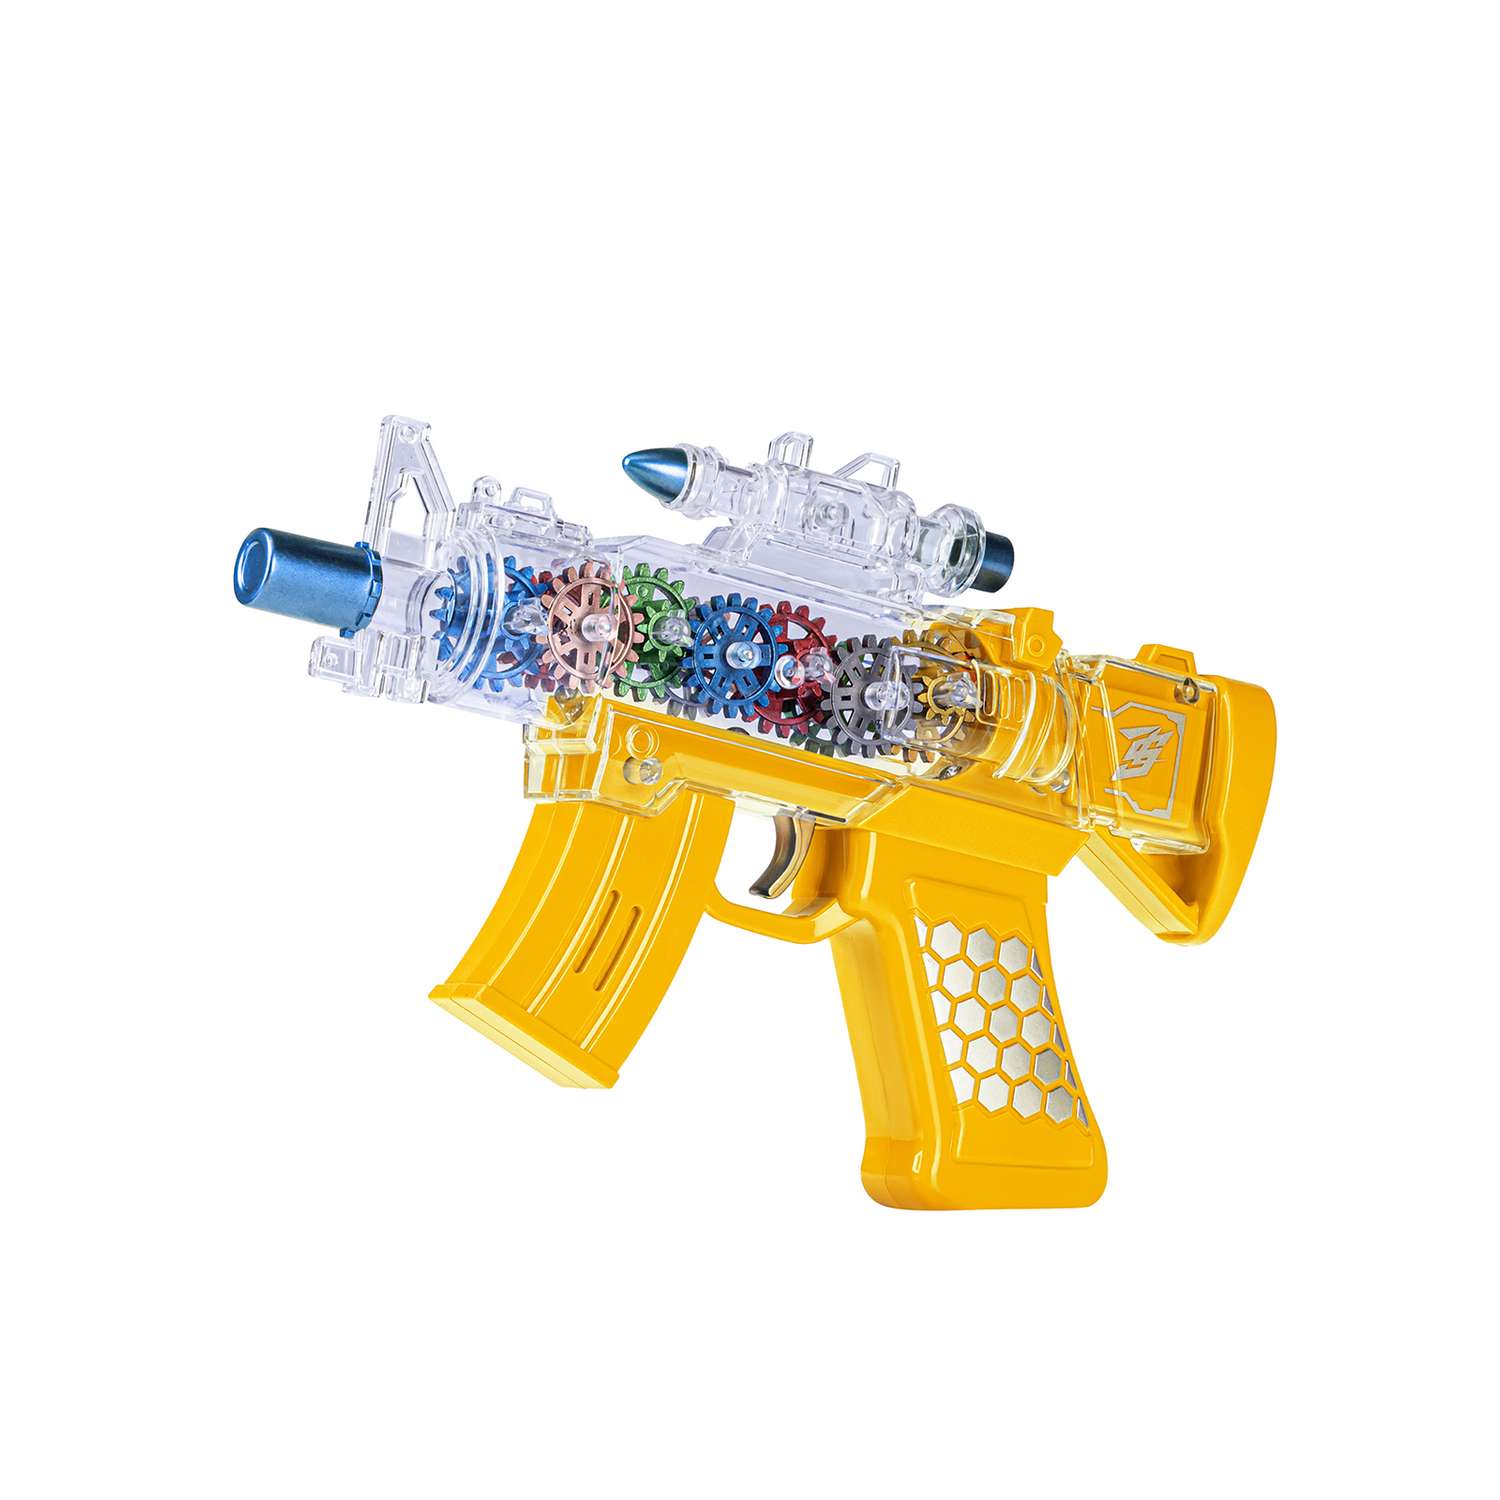 Игрушечное оружие Маленький Воин Автомат на батарейках Свет Звук Подвижные детали Цвет желтый - фото 3